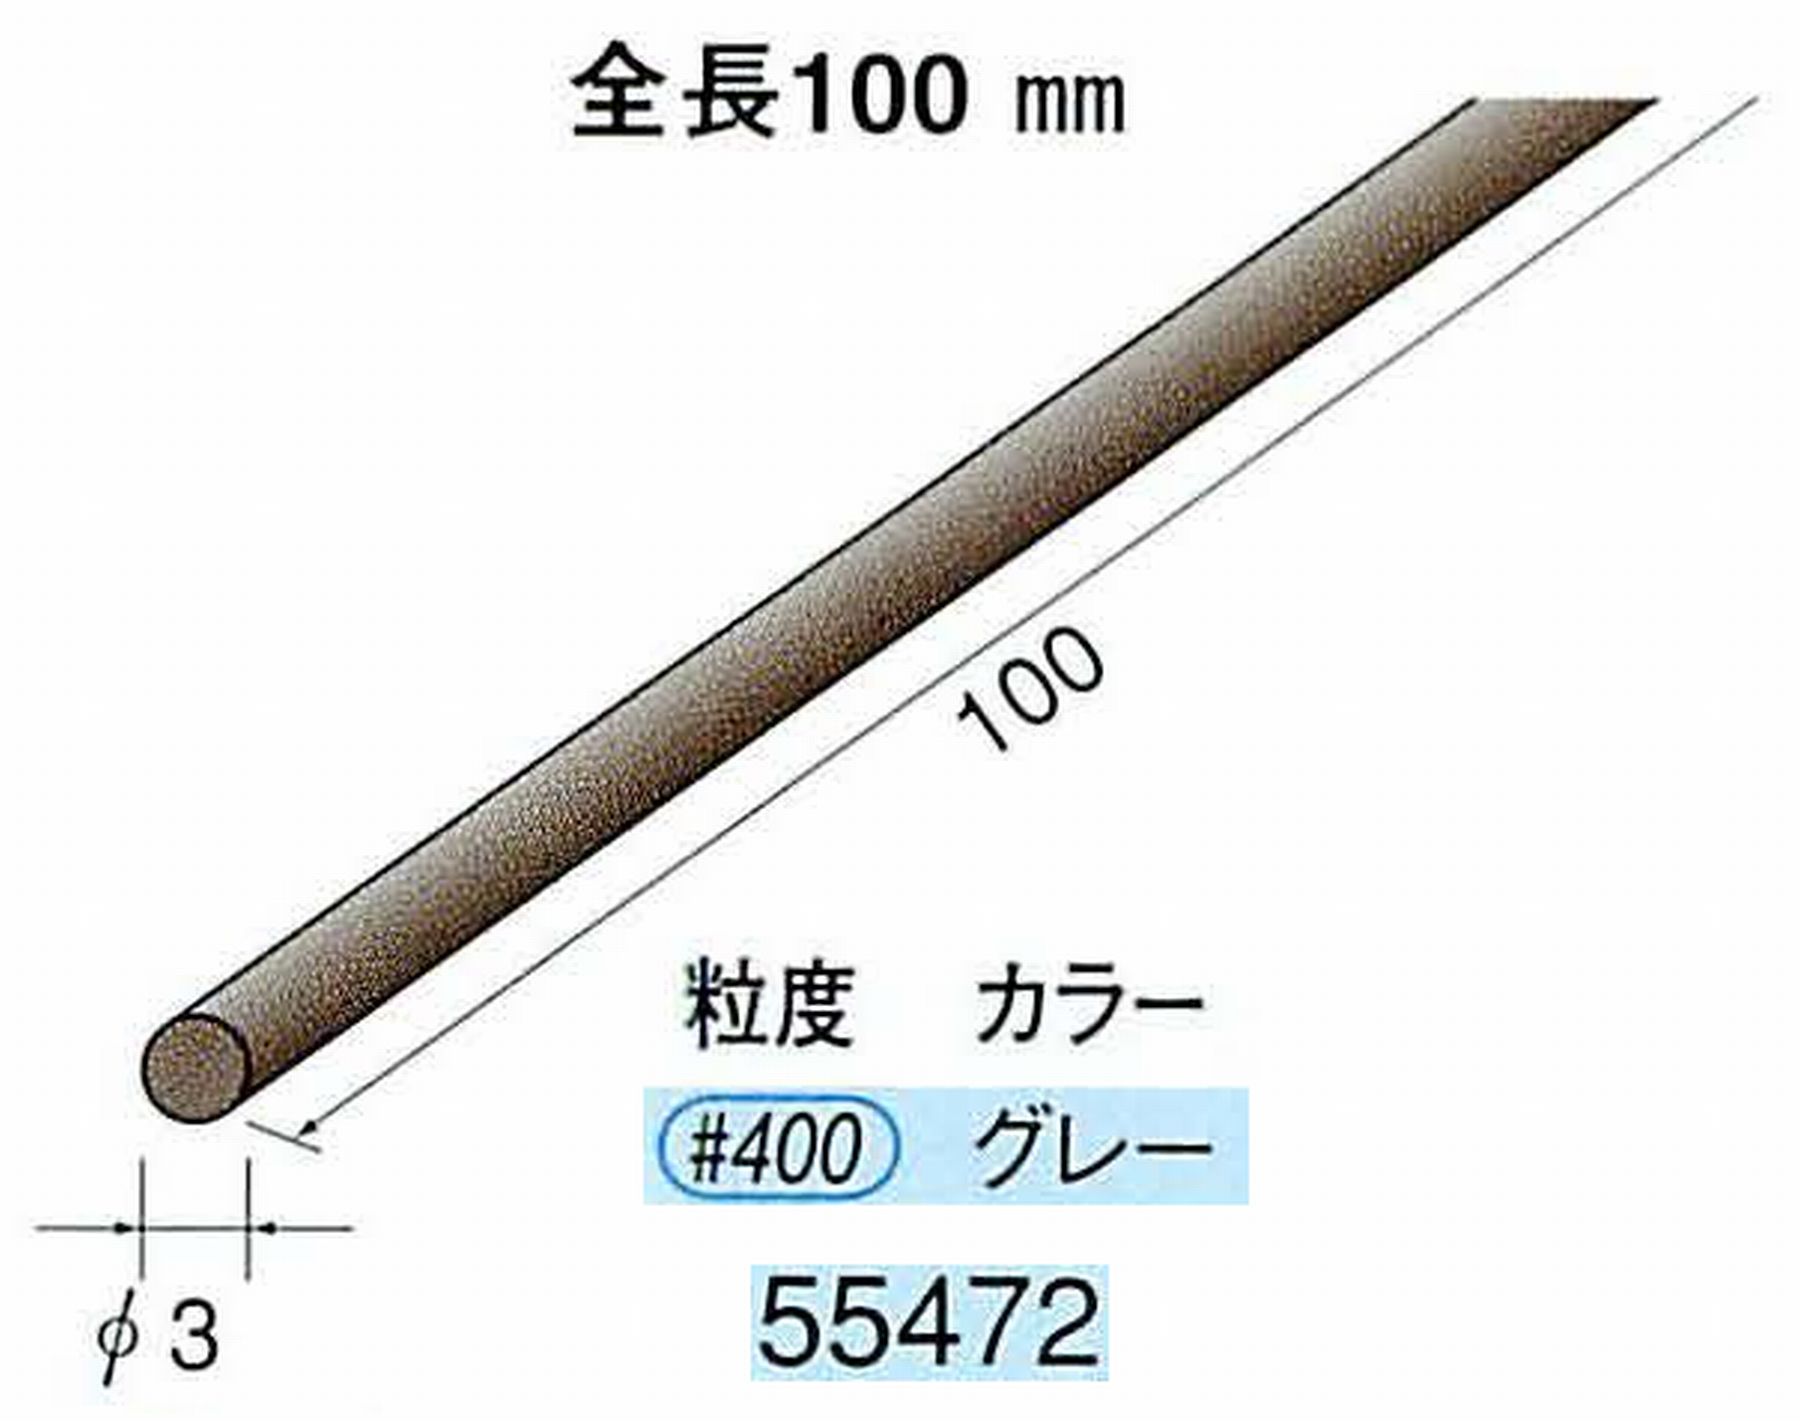 ナカニシ/NAKANISHI ダイヤモンドセラファイバー砥石 全長100mm グレー φ3mm 55472